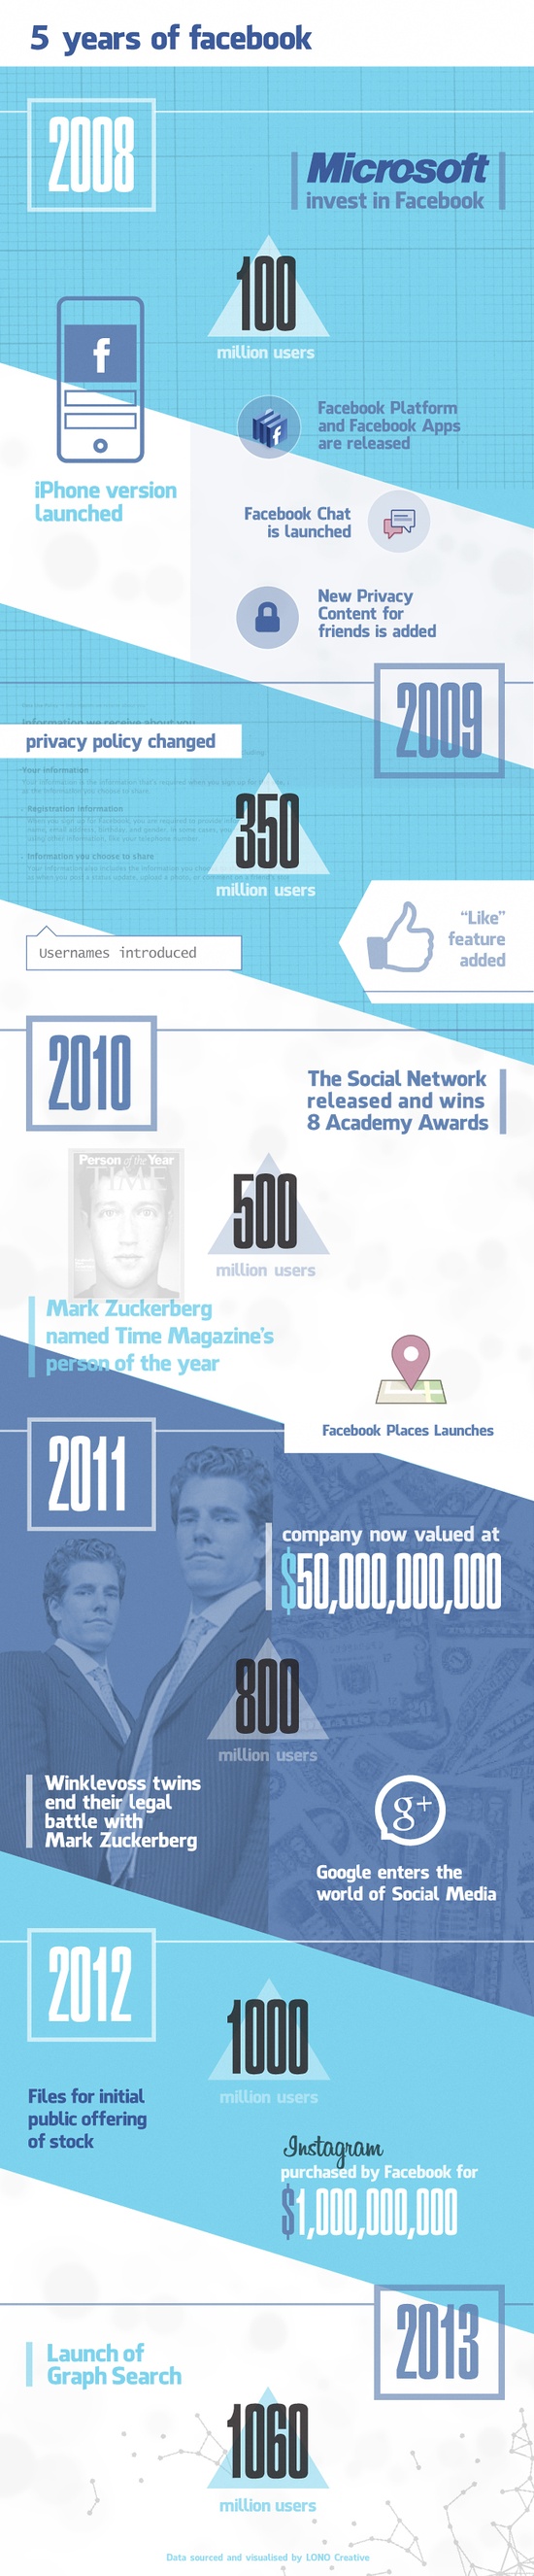 Evolución de Facebook 2008 a 2013